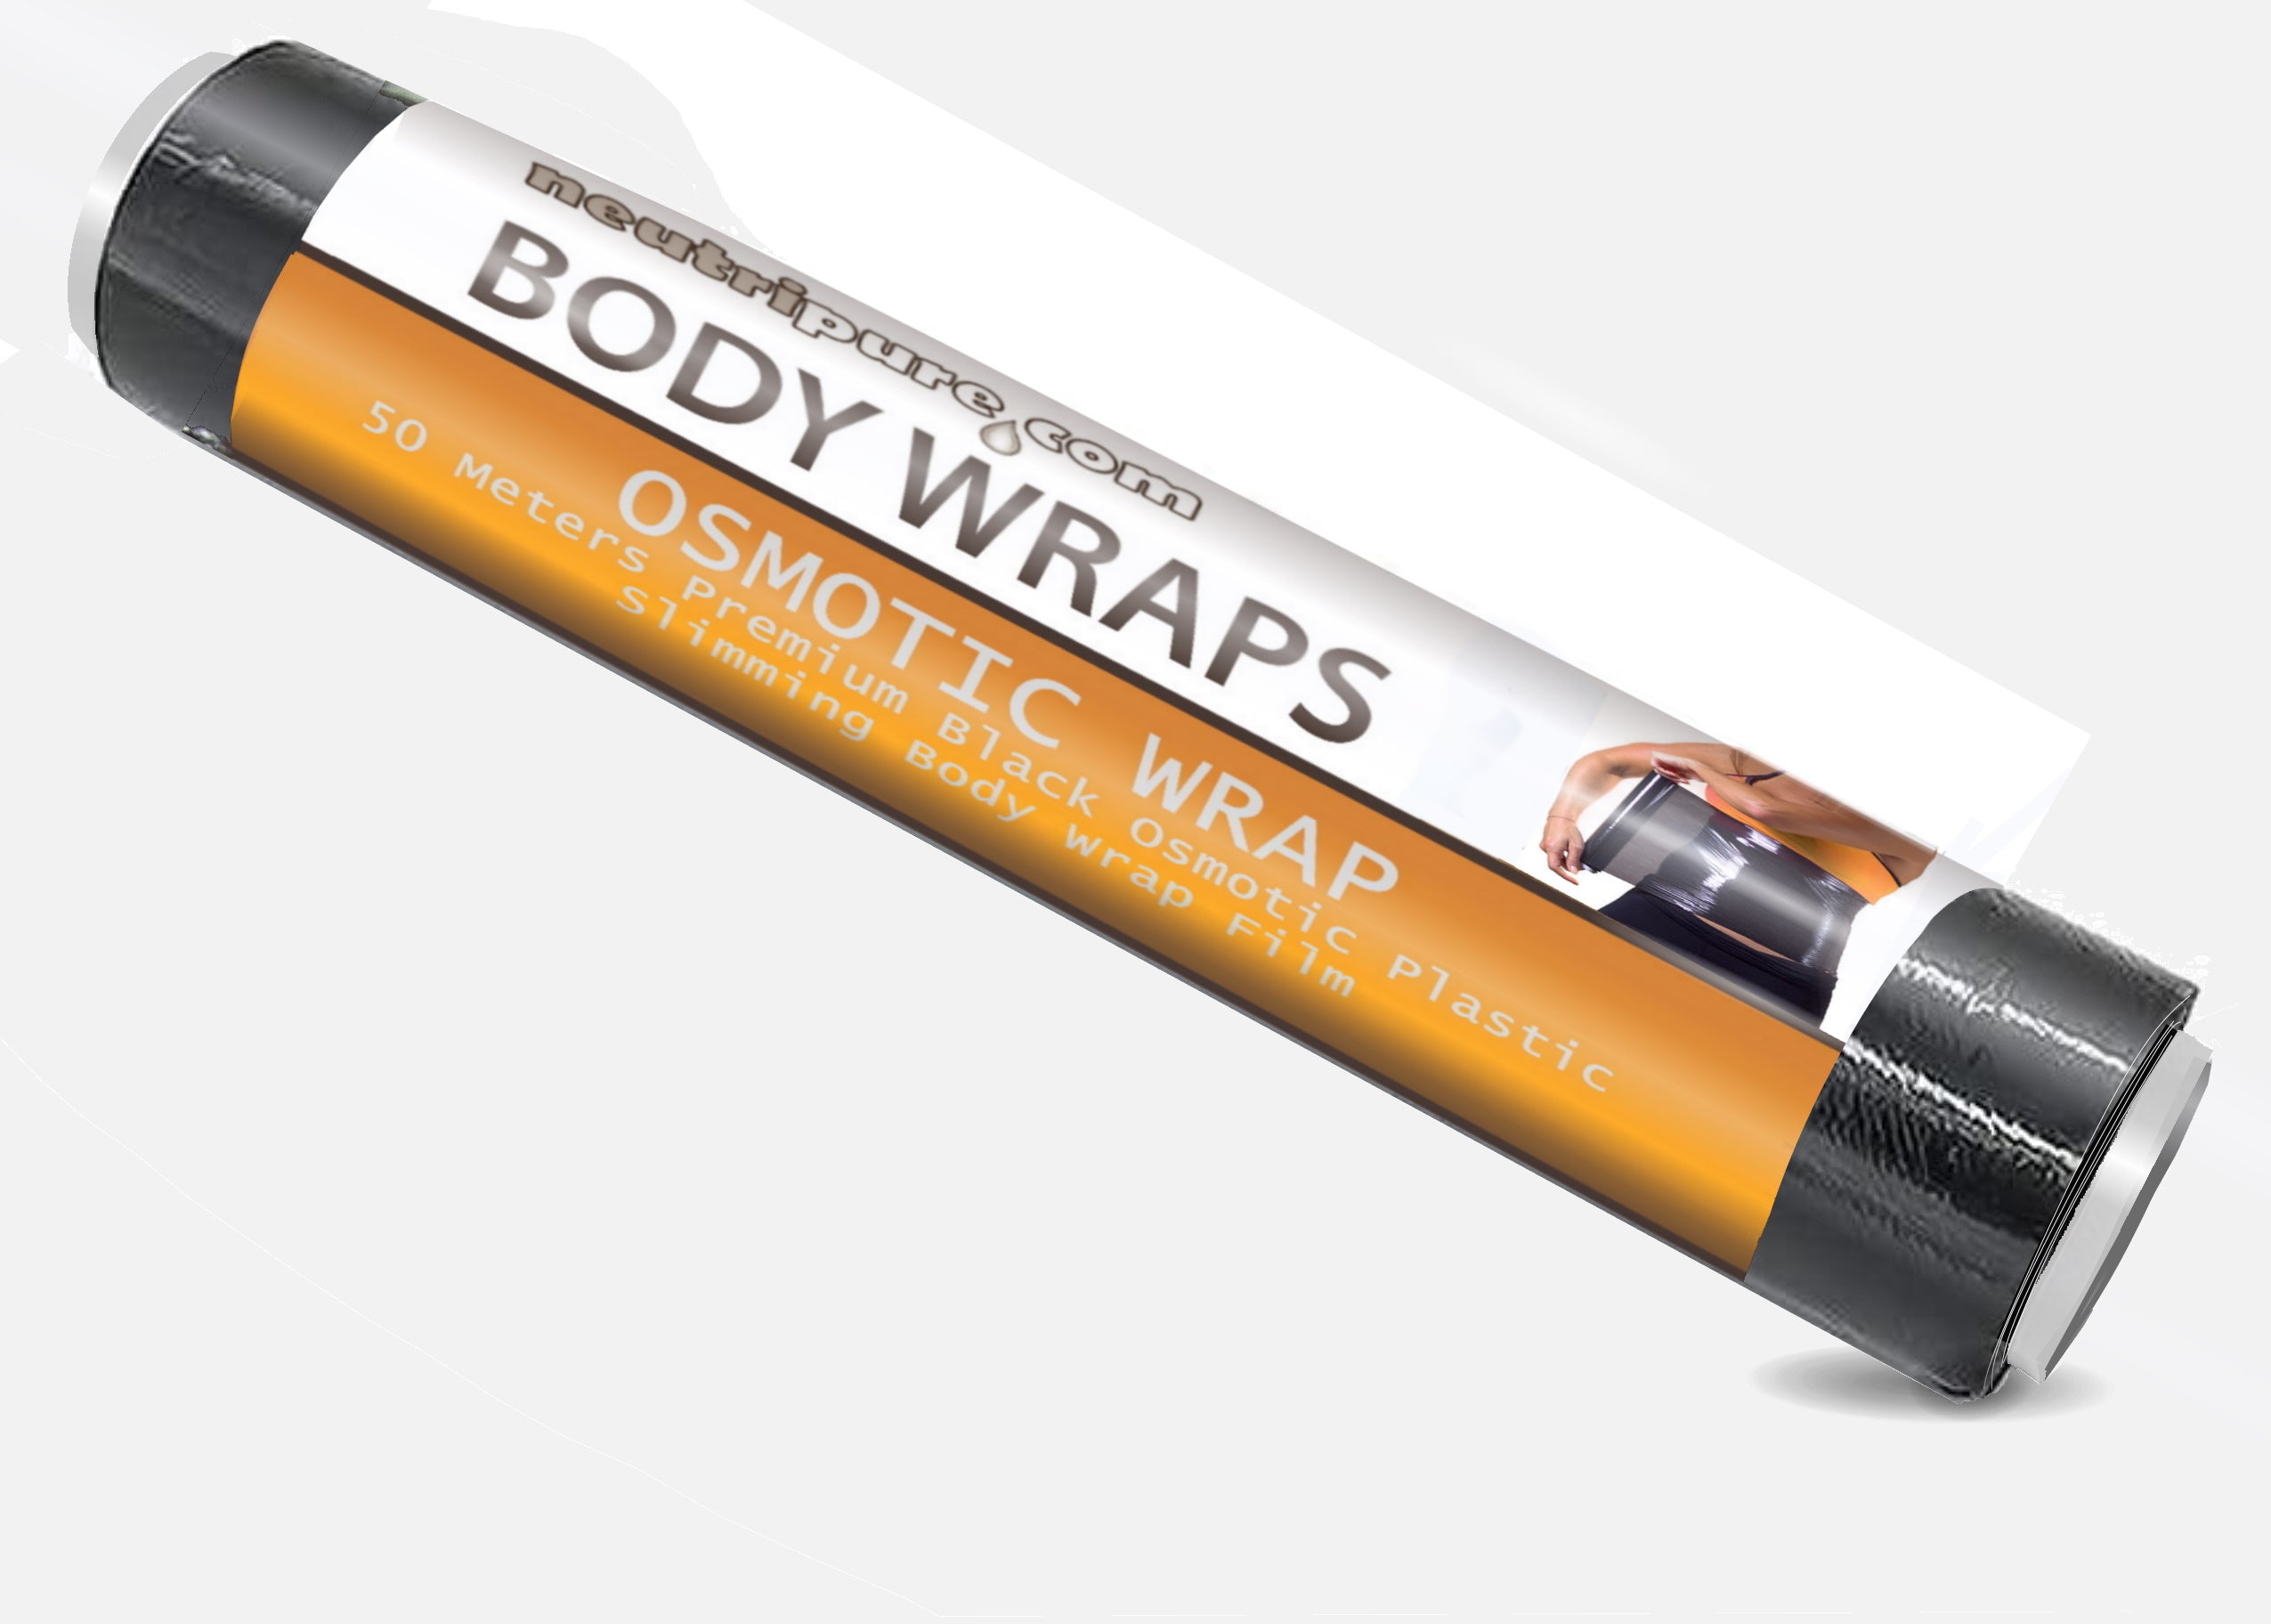 Wholesale - 3 Pack Body Wrap Elastic Bandages - Washable Latex Free -  Neutripure